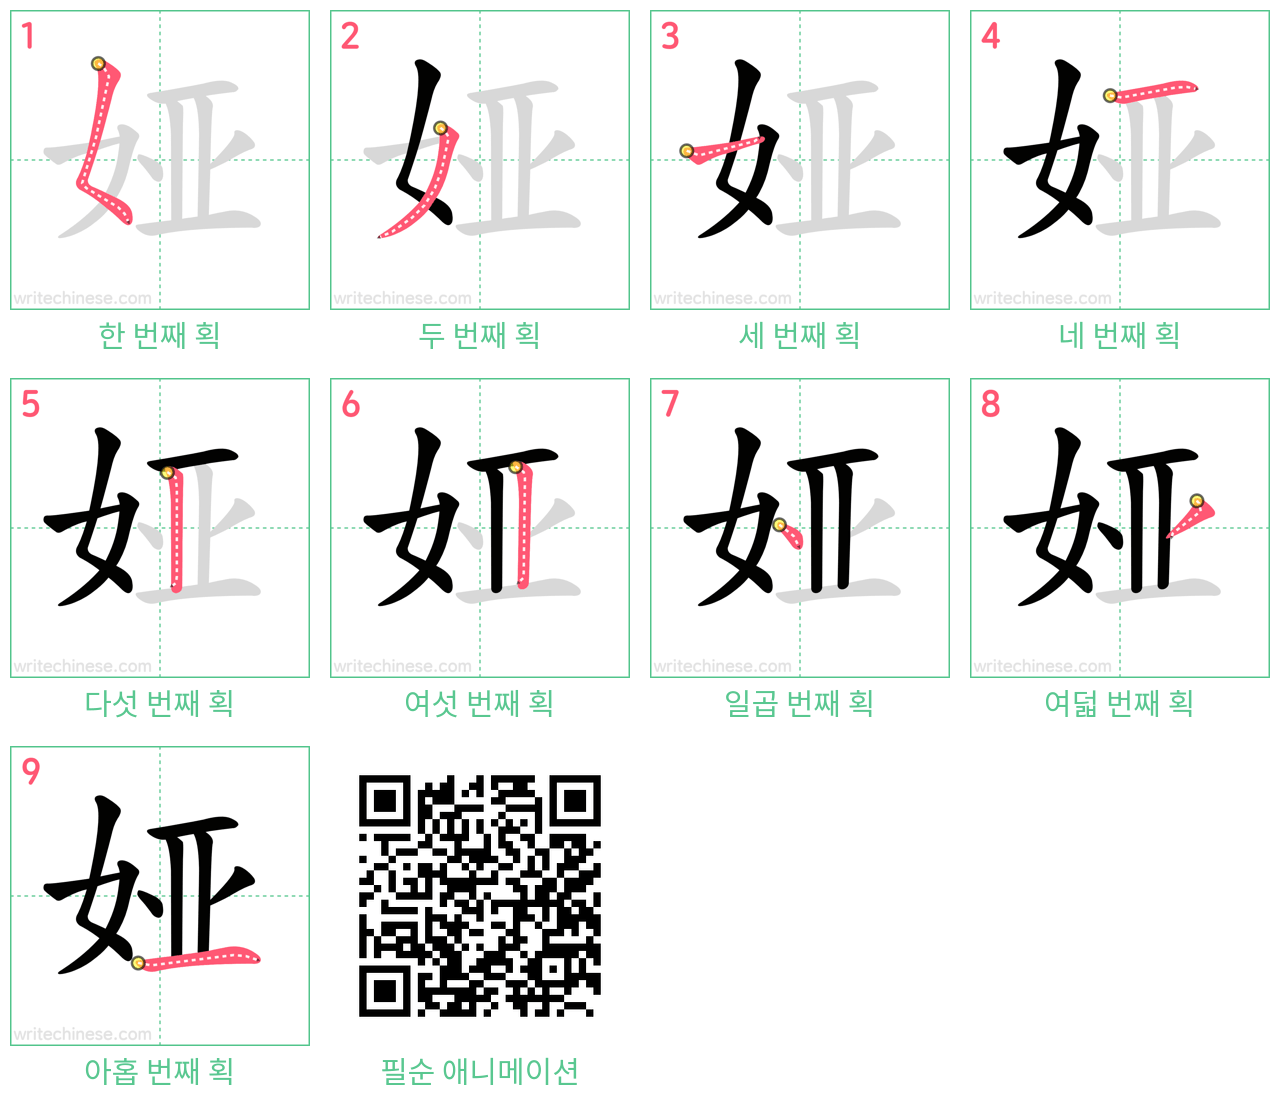 娅 step-by-step stroke order diagrams